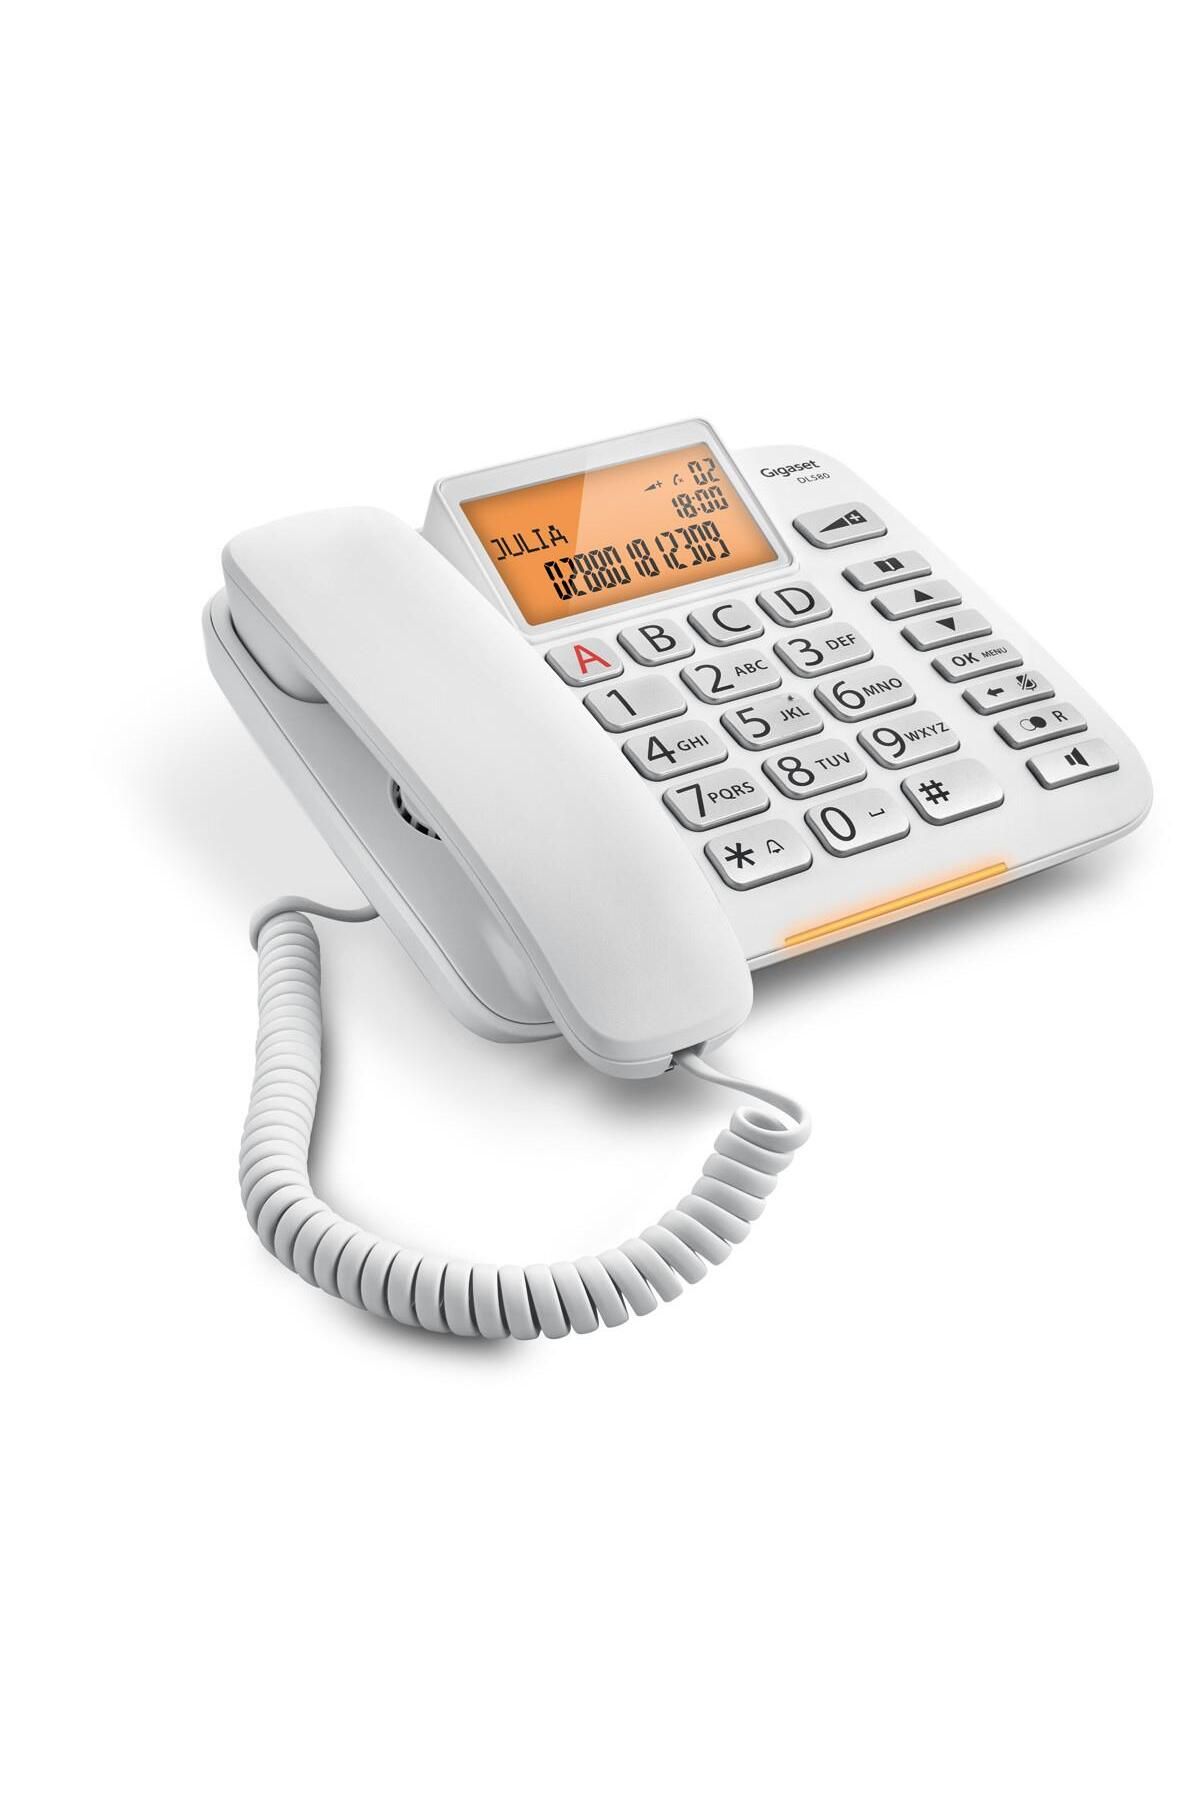 Gigaset Dl580 Beyaz Kablolu Telefon